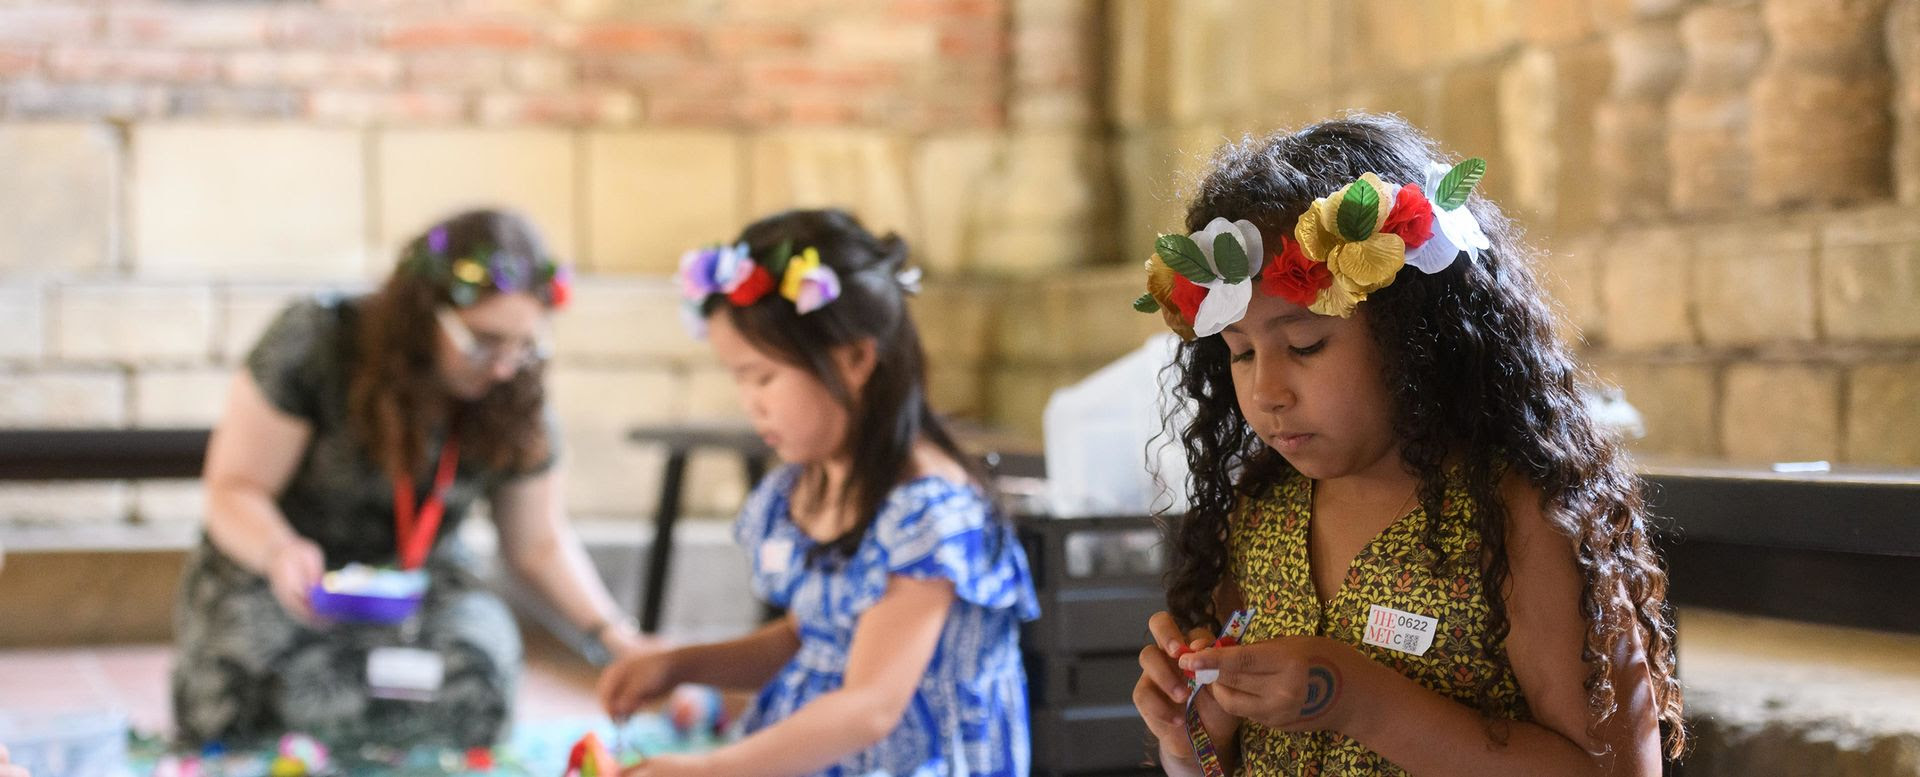 Duas meninas e uma mulher trabalham em artes e ofícios usando coroas de flores coloridas.